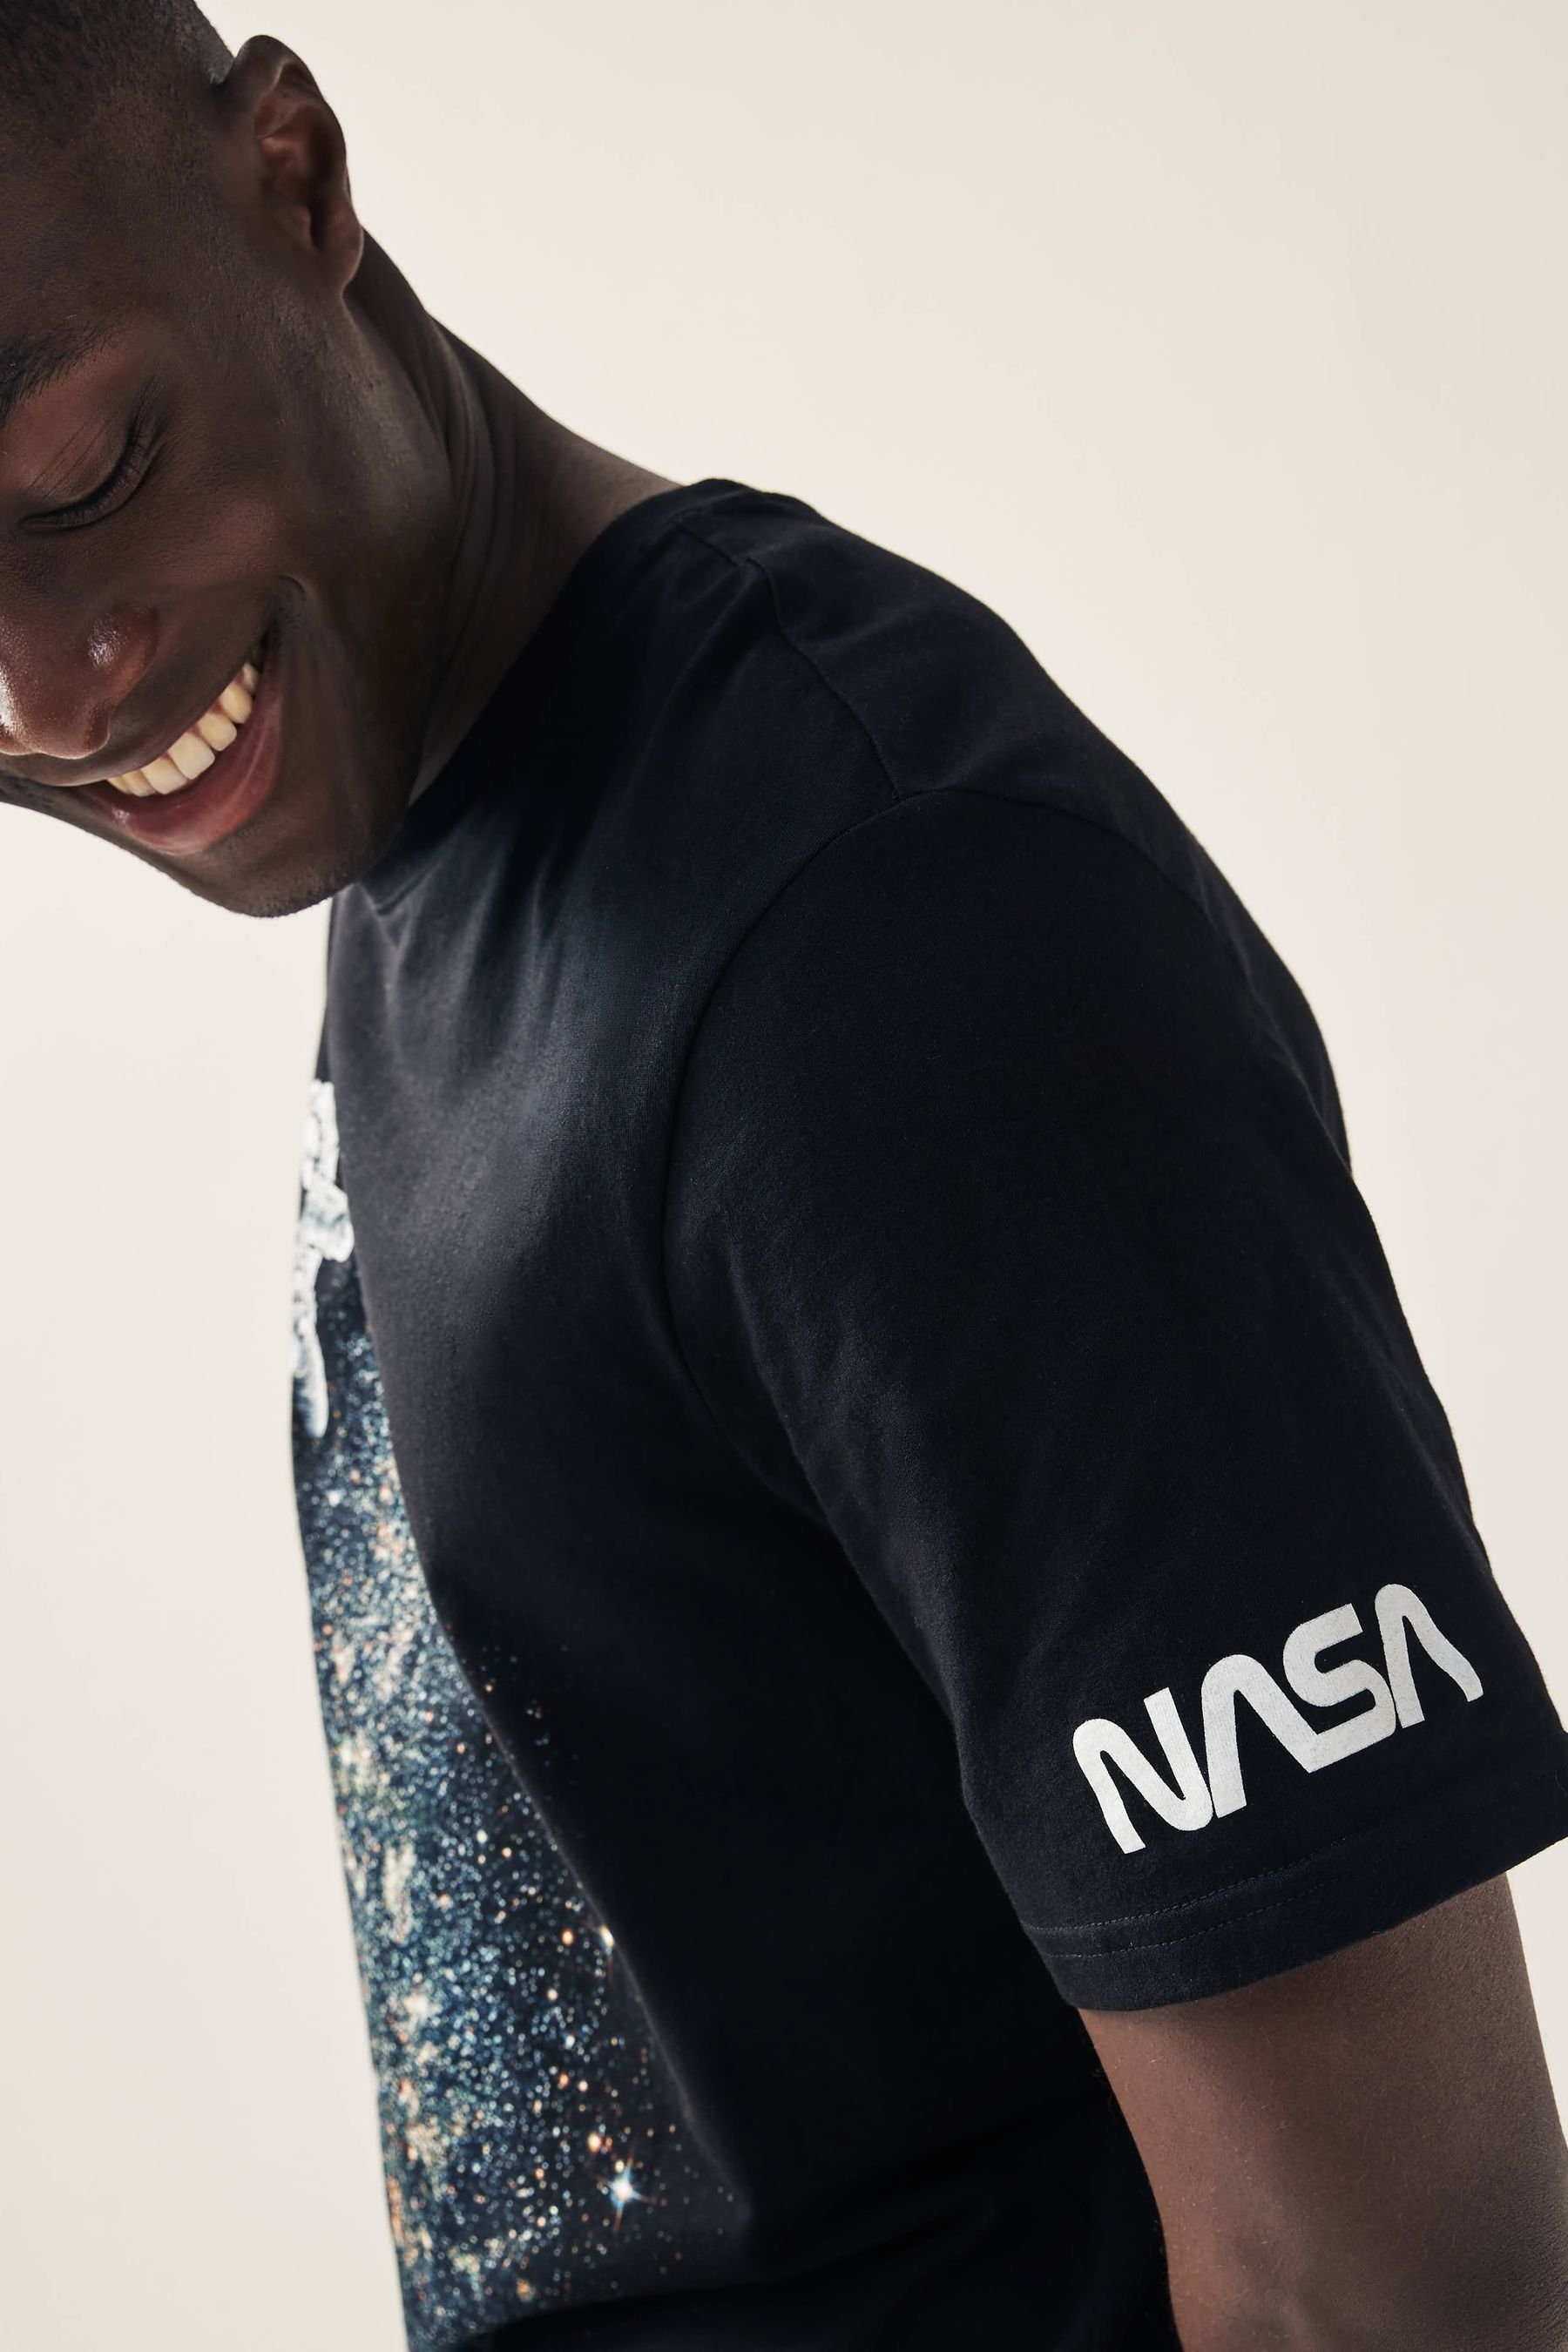 (1-tlg) T-Shirt Lizenz-T-Shirt Next NASA